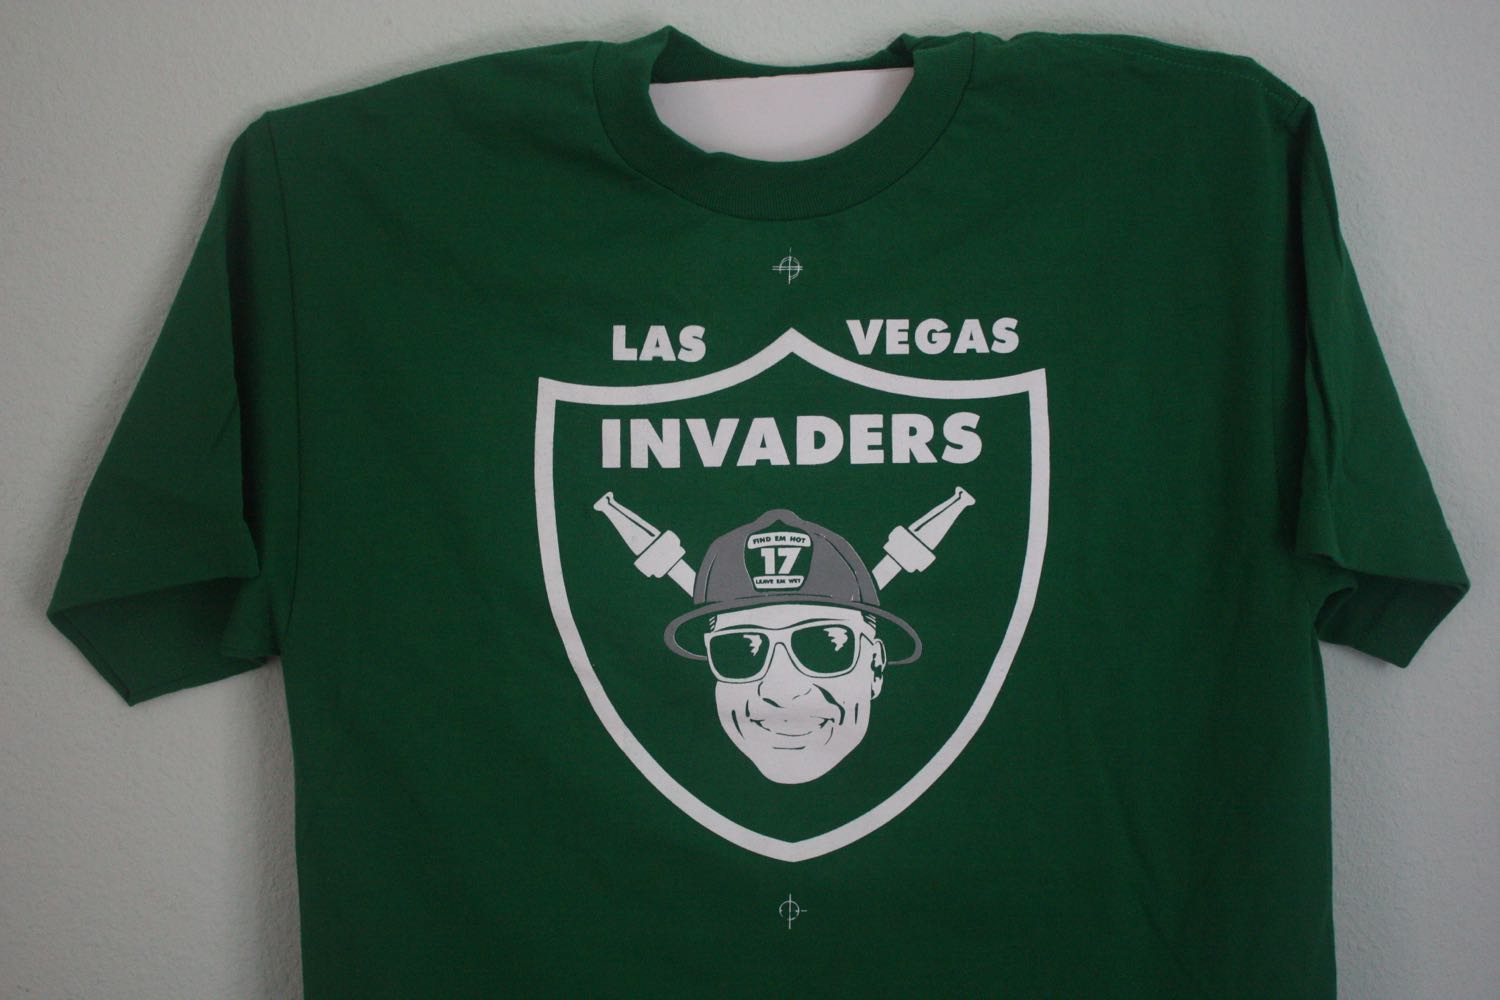 Las Vegas Invaders